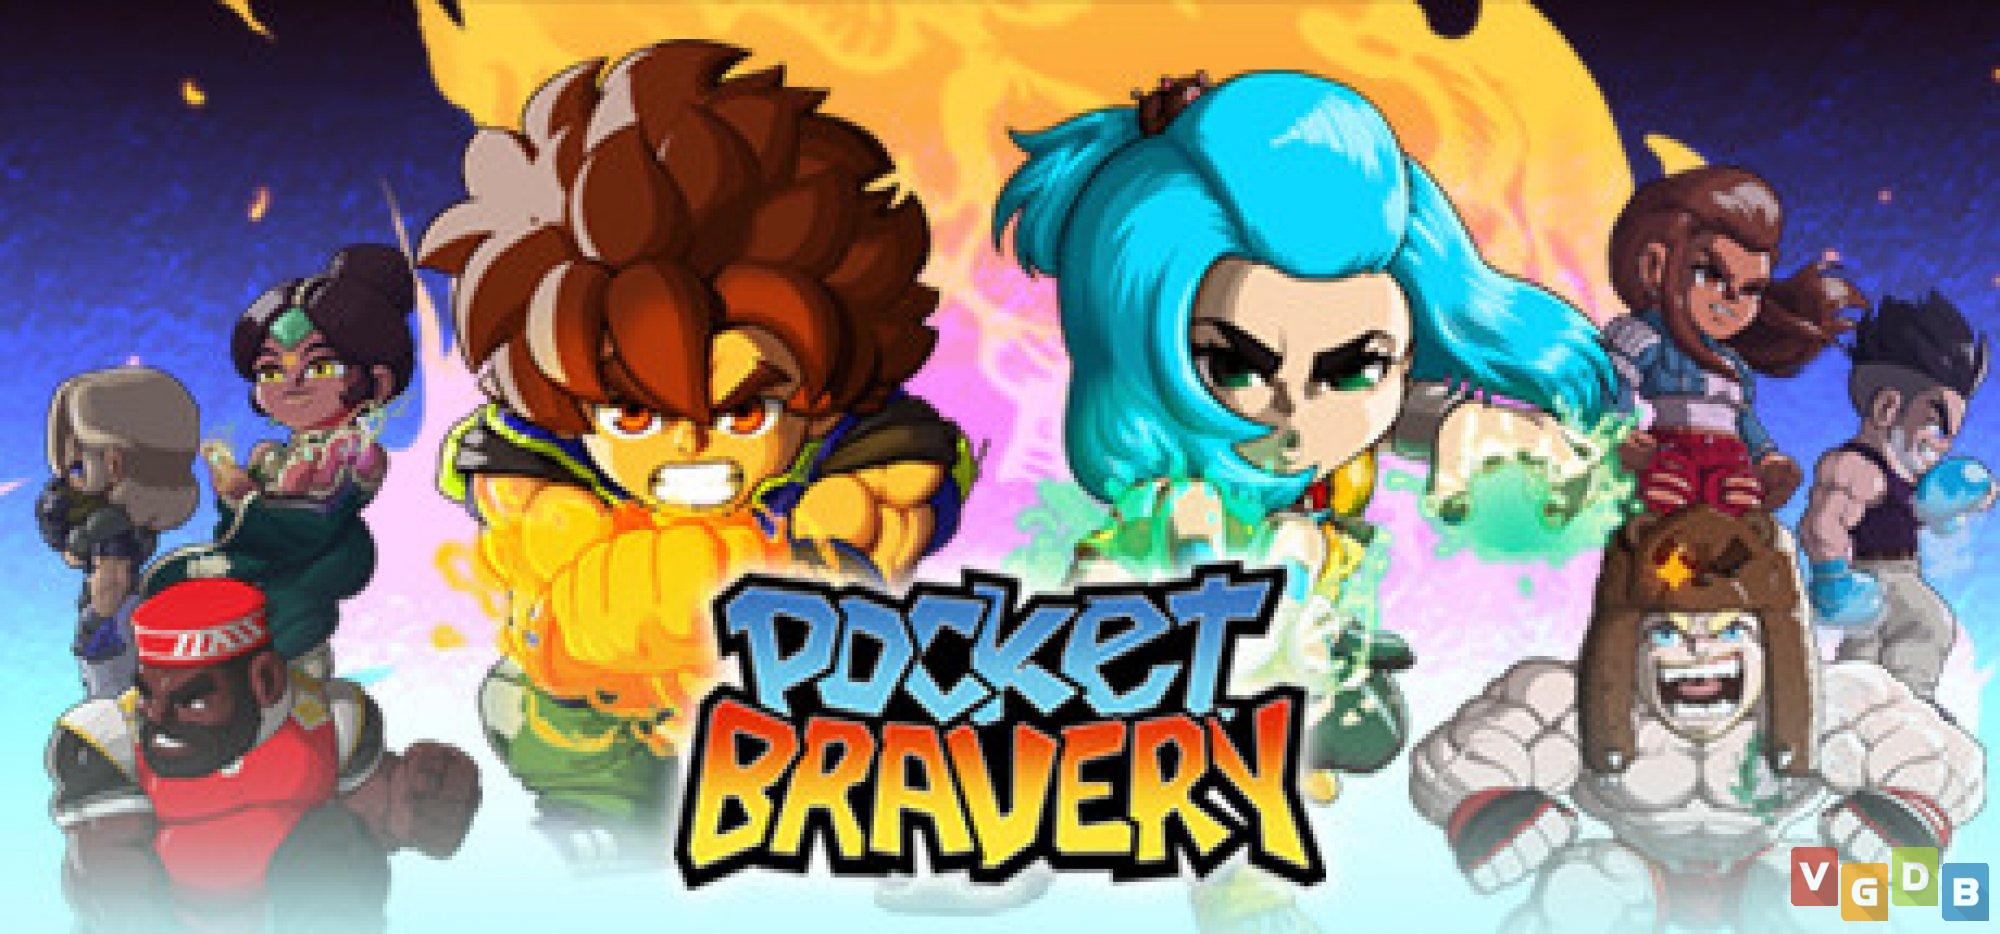 Pocket Bravery: veja gameplay, requisitos e como fazer o download do jogo